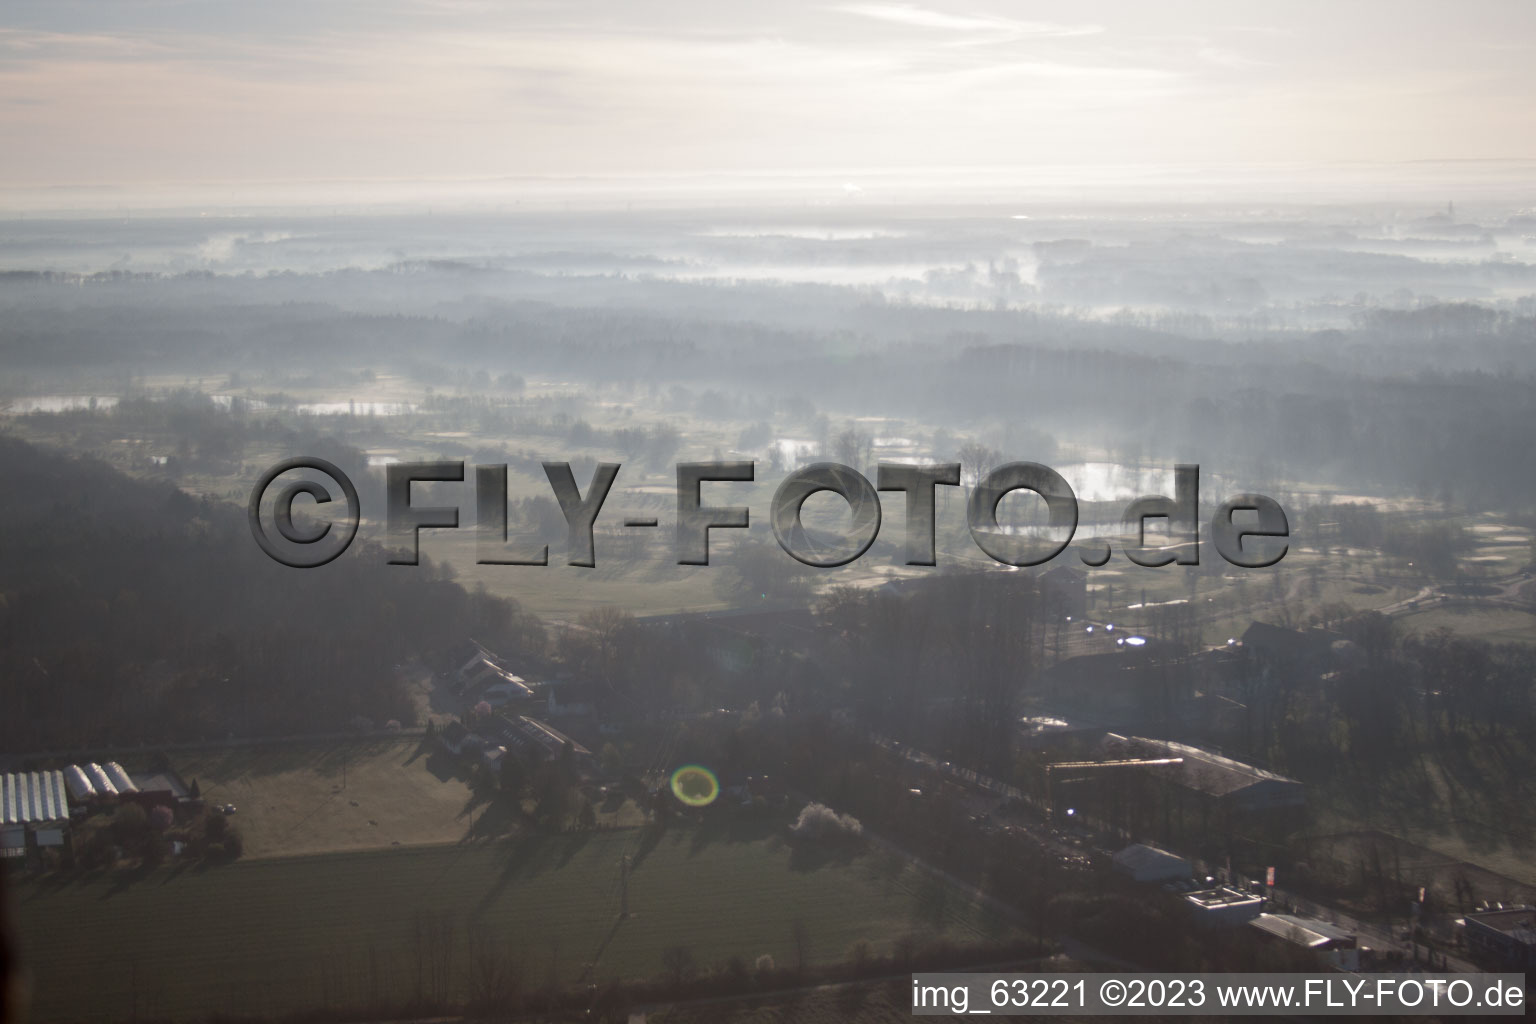 Essingen, Golfclub Dreihof im Bundesland Rheinland-Pfalz, Deutschland aus der Luft betrachtet